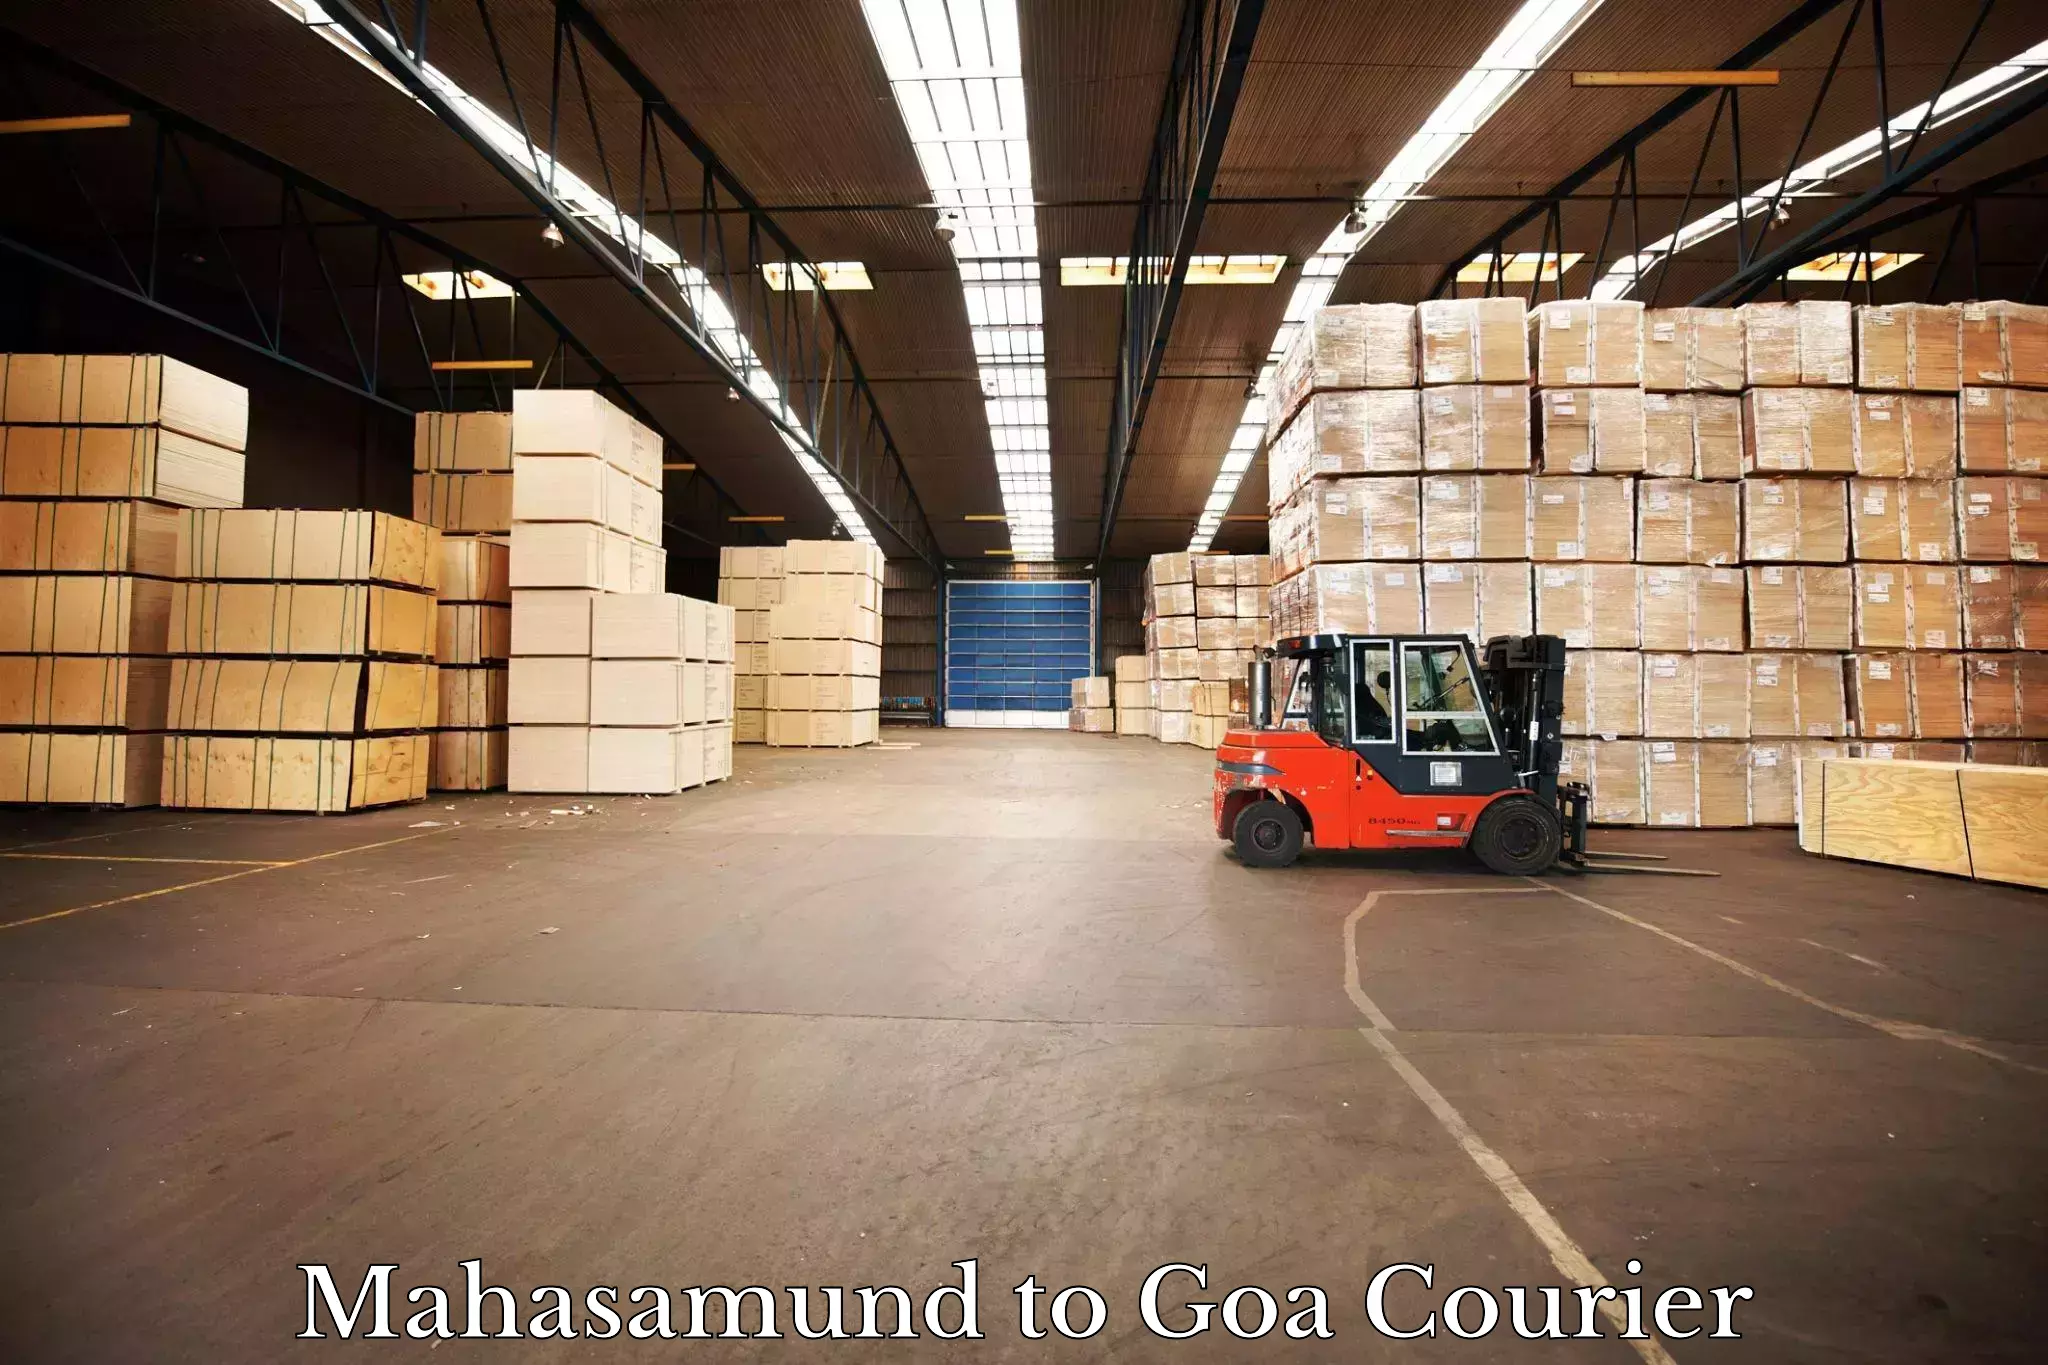 Door-to-door freight service Mahasamund to Ponda